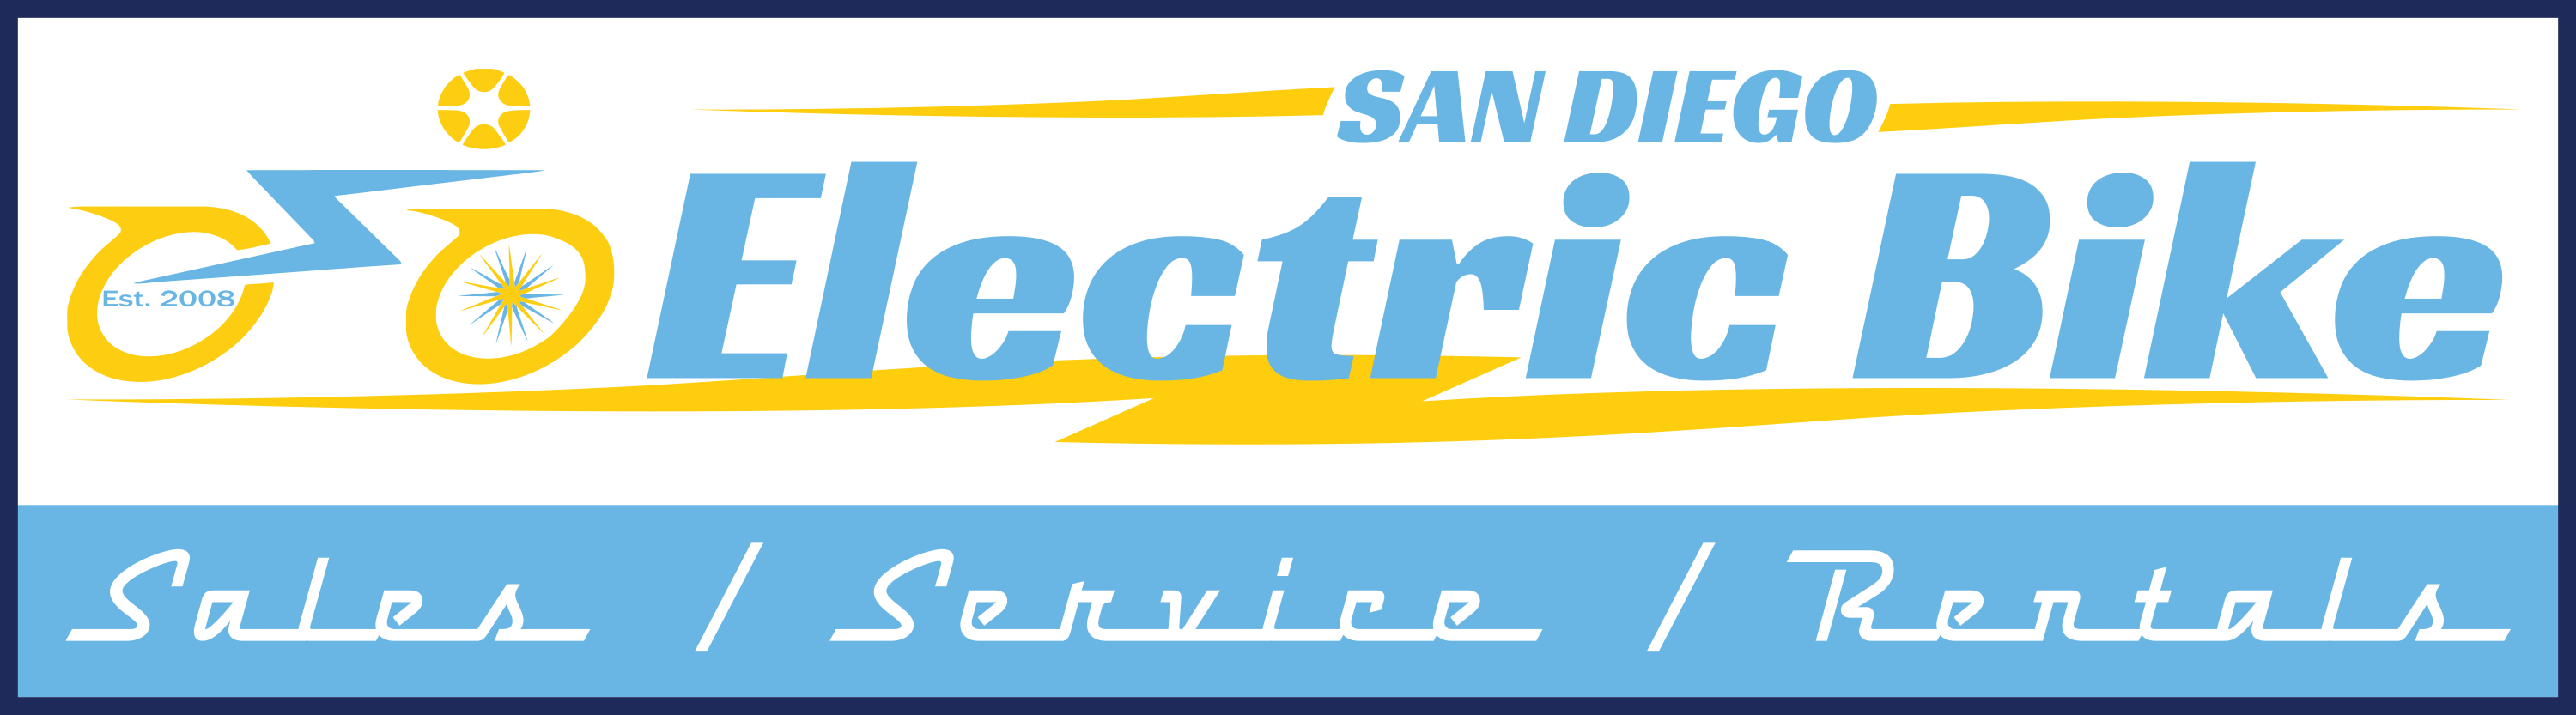 San Diego Electric Bike logo